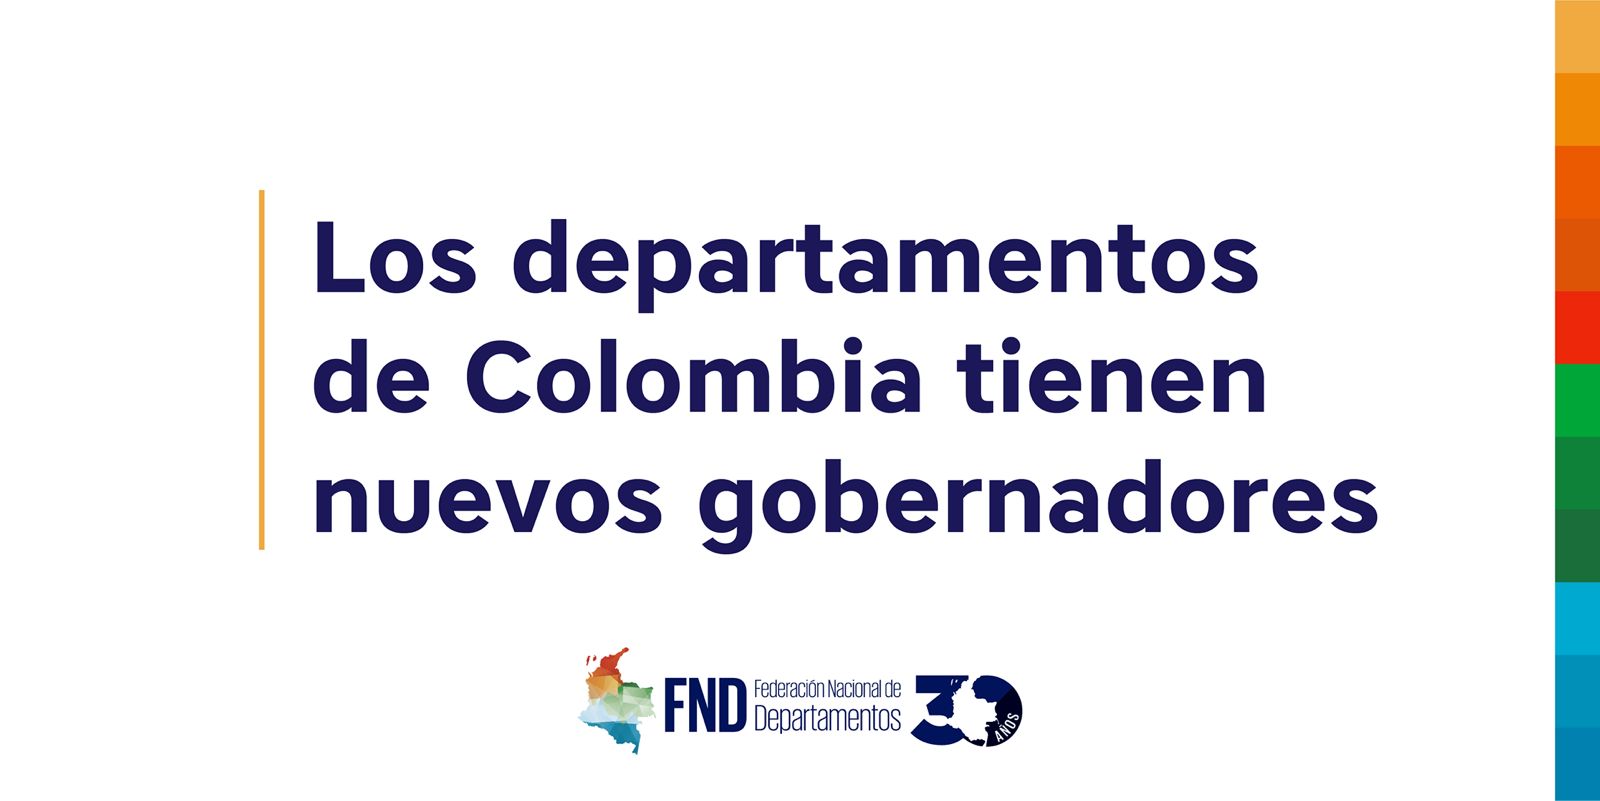 Los departamentos de Colombia tienen nuevos gobernadores